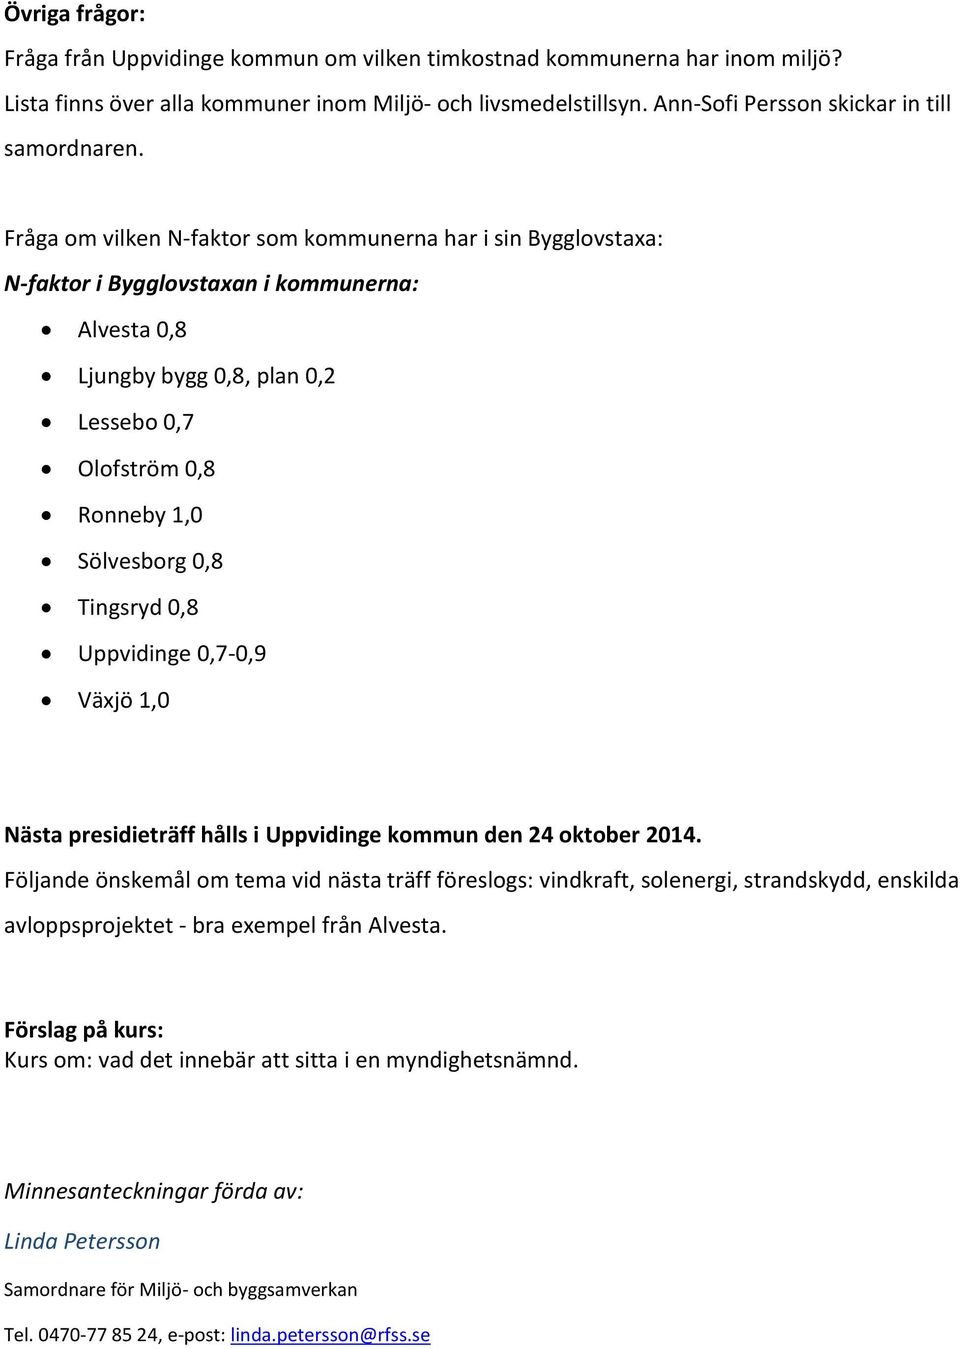 Fråga om vilken N-faktor som kommunerna har i sin Bygglovstaxa: N-faktor i Bygglovstaxan i kommunerna: Alvesta 0,8 Ljungby bygg 0,8, plan 0,2 Lessebo 0,7 Olofström 0,8 Ronneby 1,0 Sölvesborg 0,8